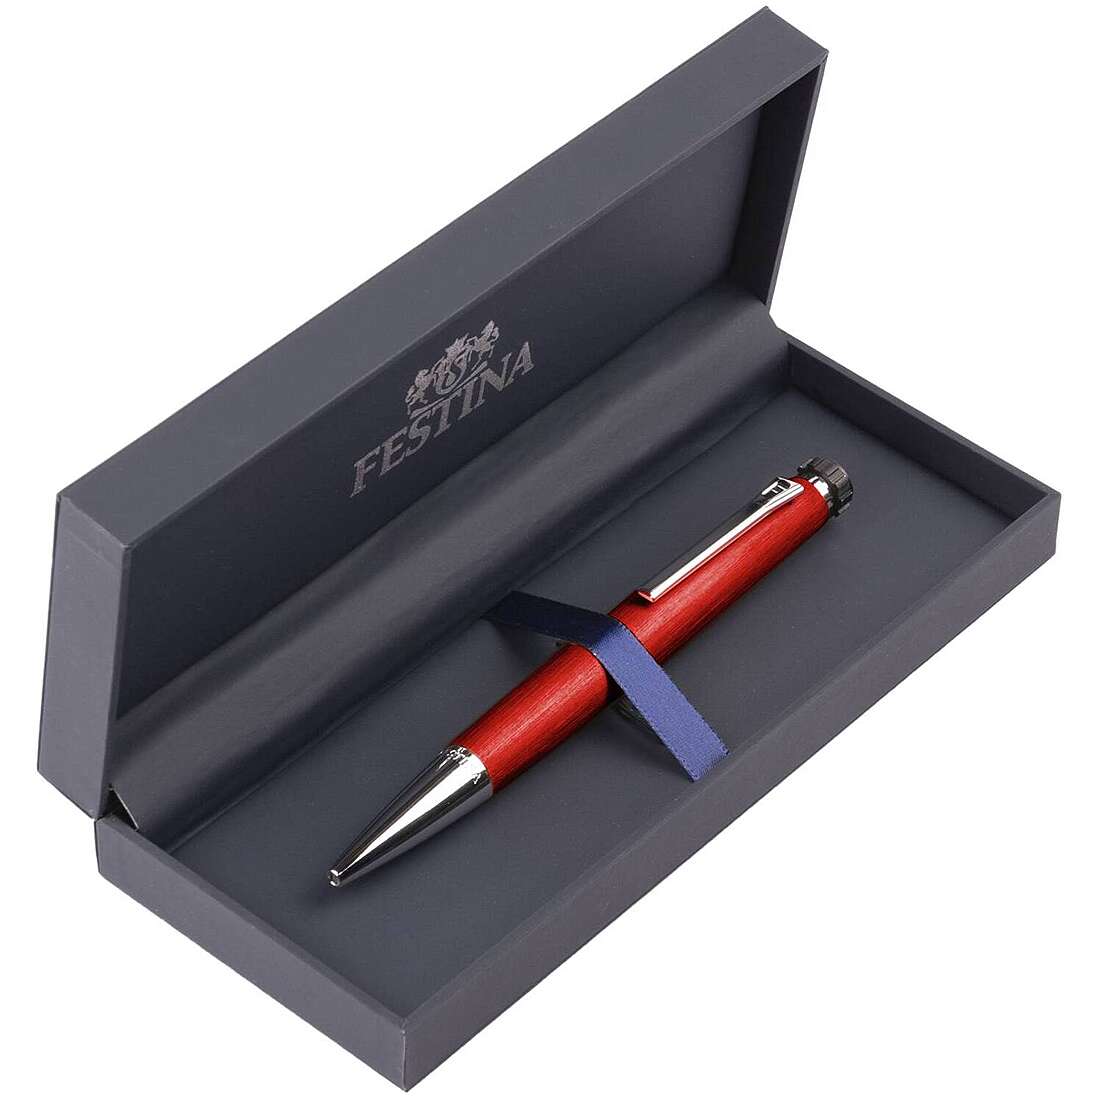 Individualisierte Stift mit Kugelschreiber von Festina aus der Chrono Bike FWS4104/P